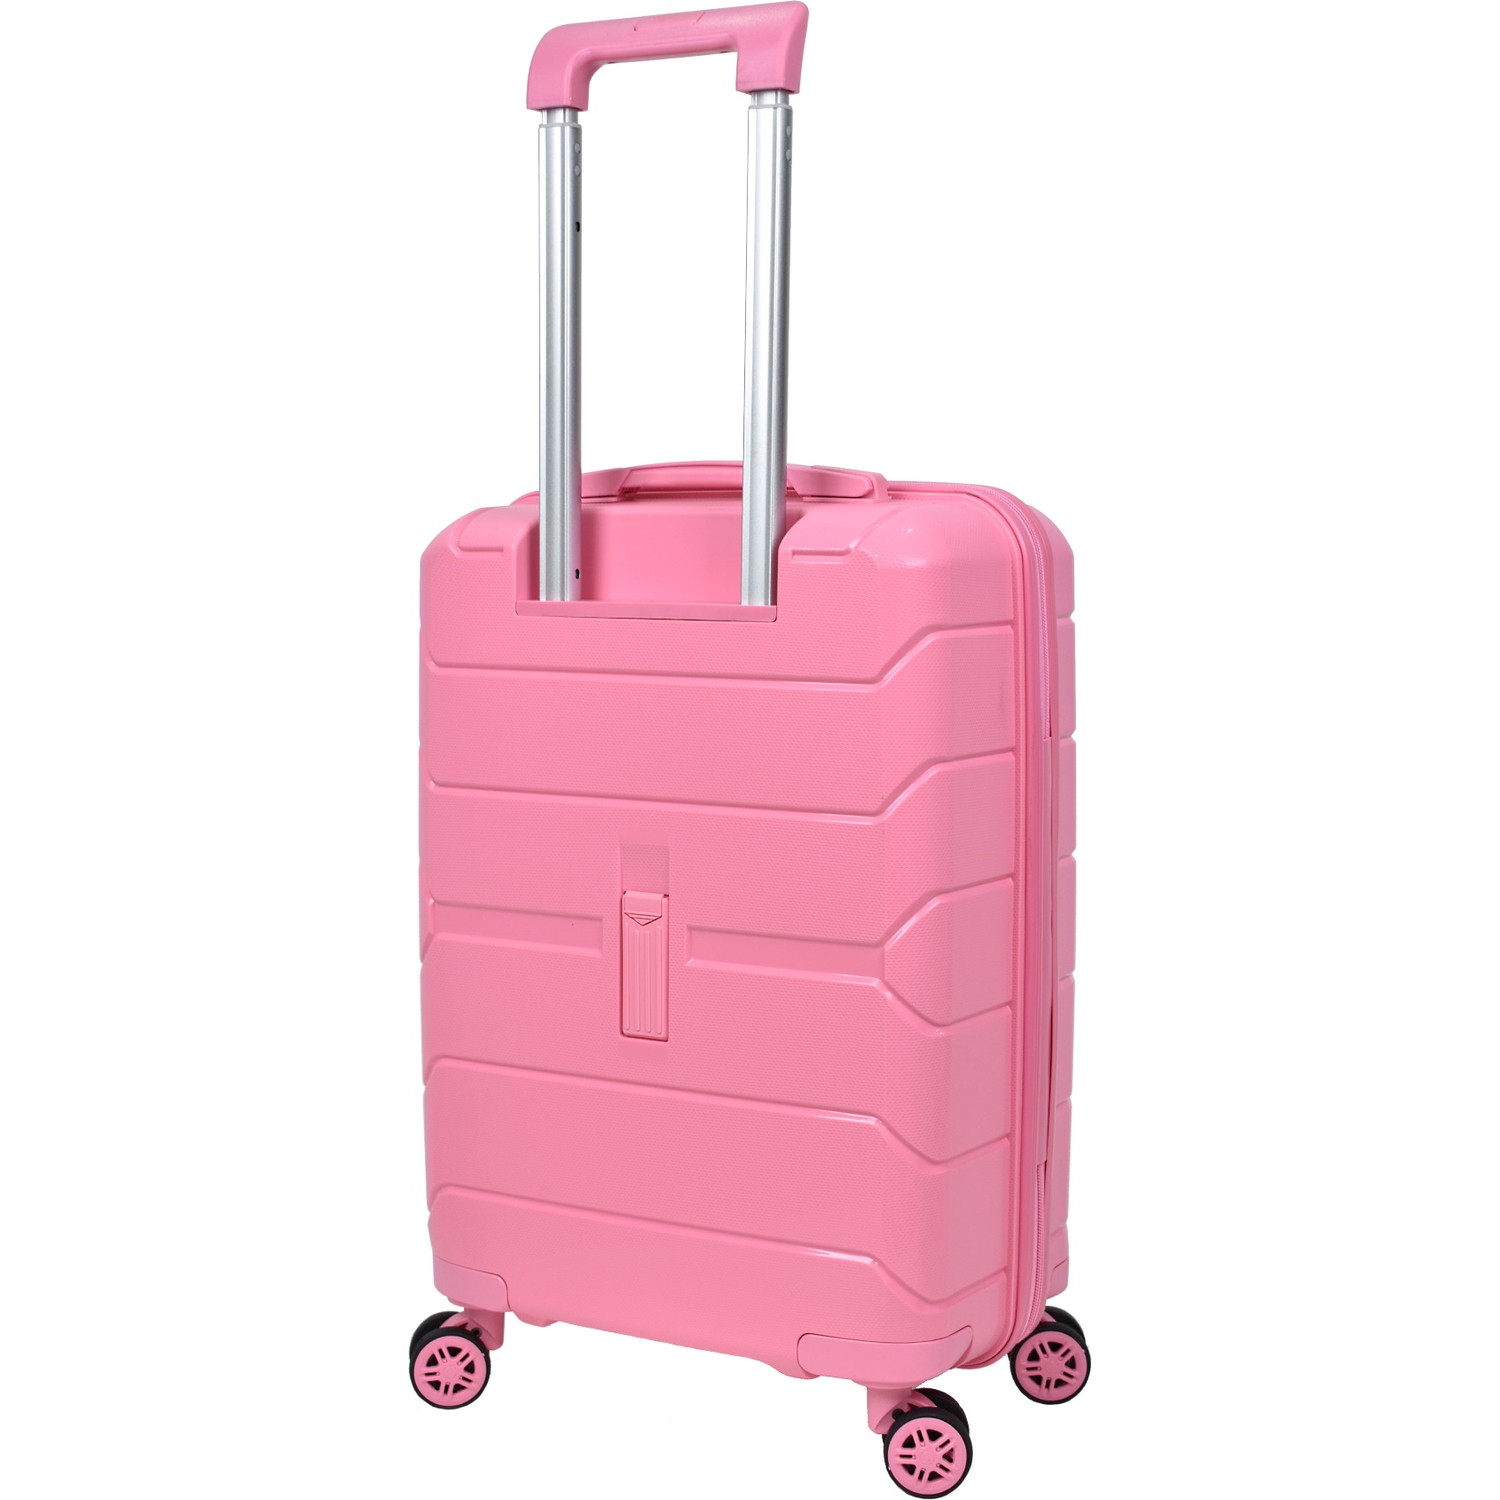 Маленький чемодан для ручьной клади из полипропилена MCS V366 S PUDRA! Для 8-10 кг! - 4